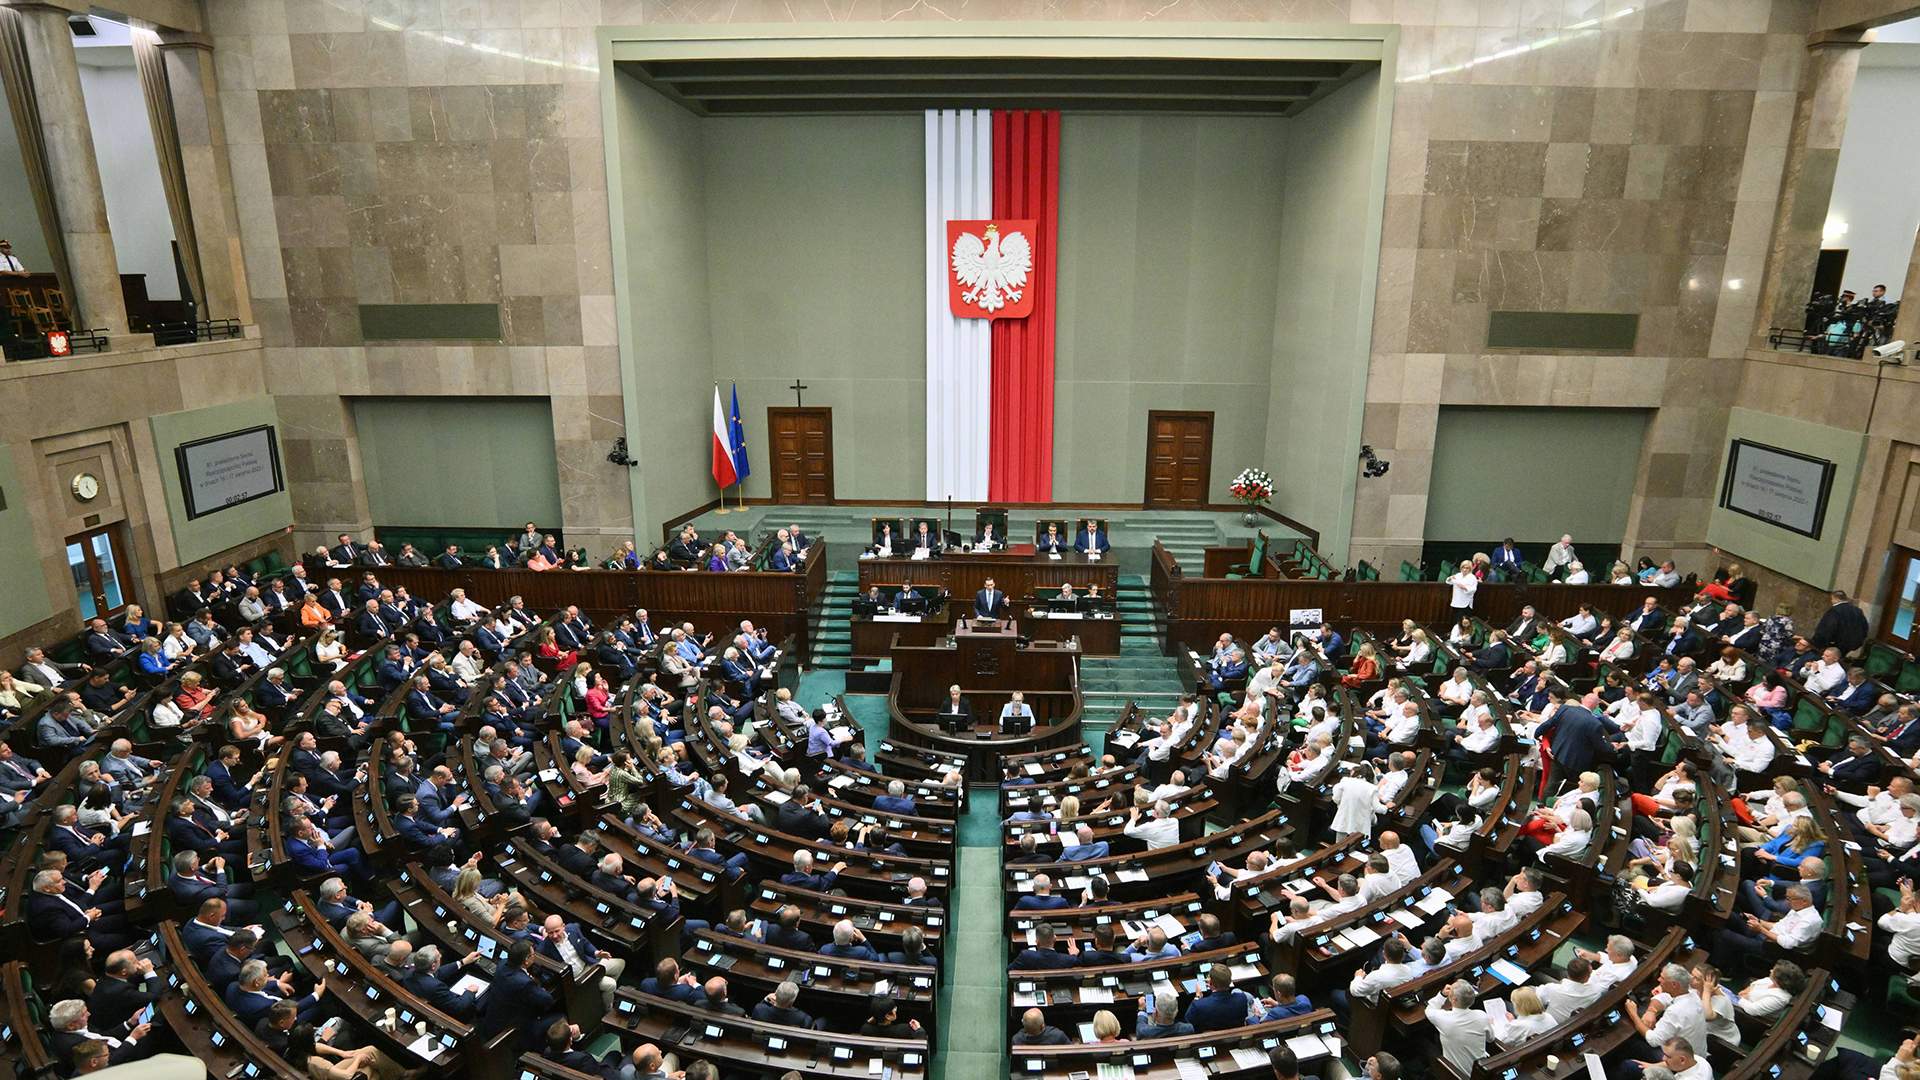 Польское правительство разбирает шпионскую деятельность предыдущего правительства